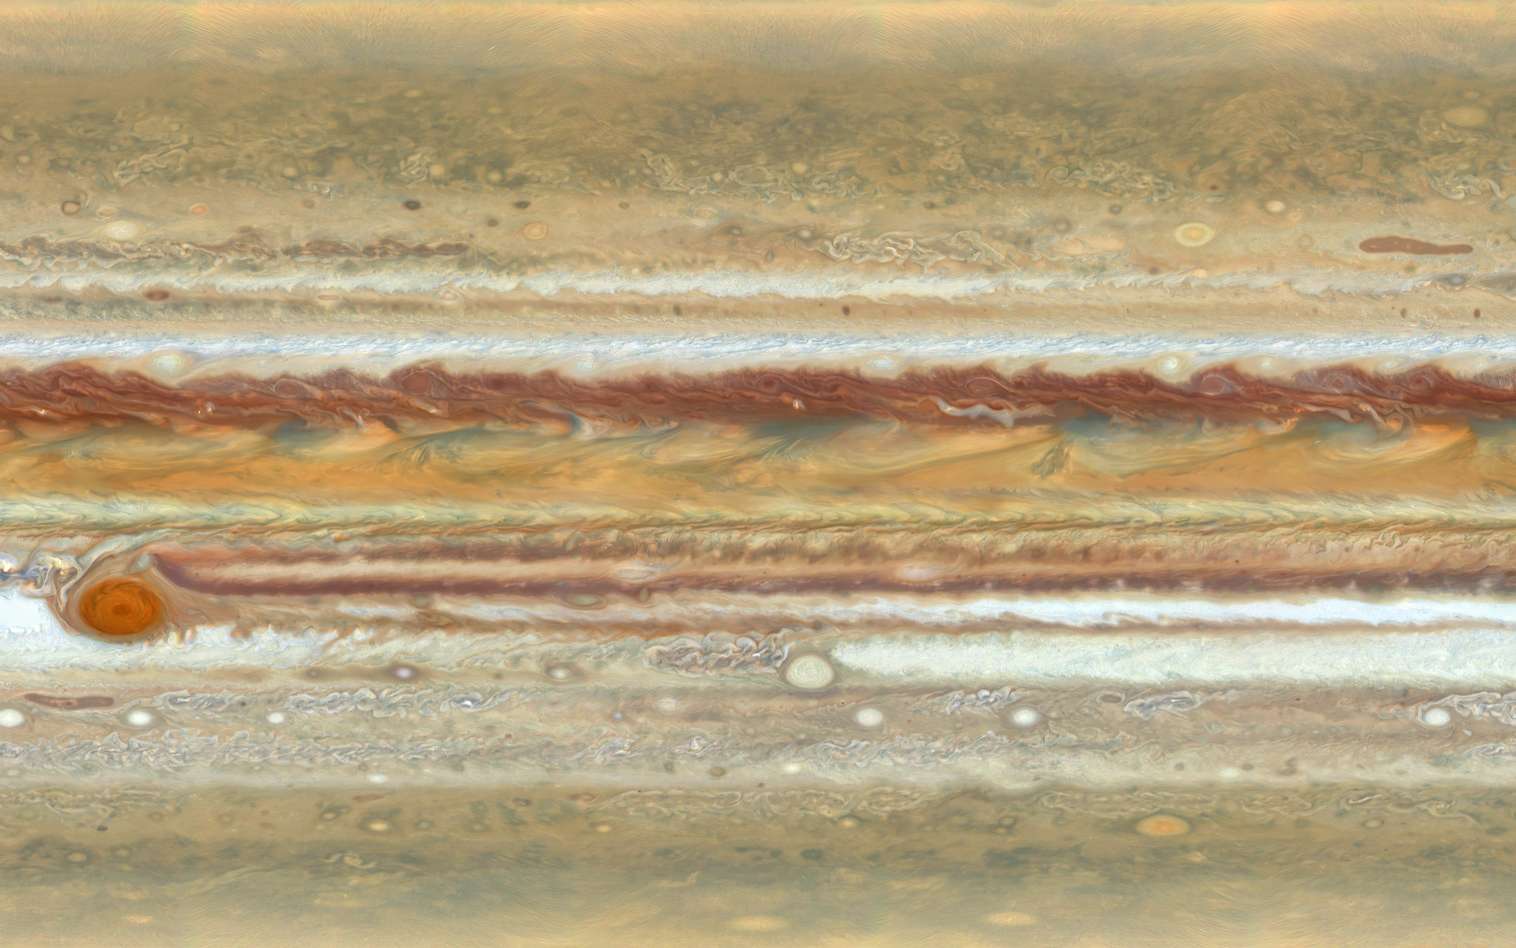 30 ans d'Hubble : retour sur les tempêtes de Jupiter